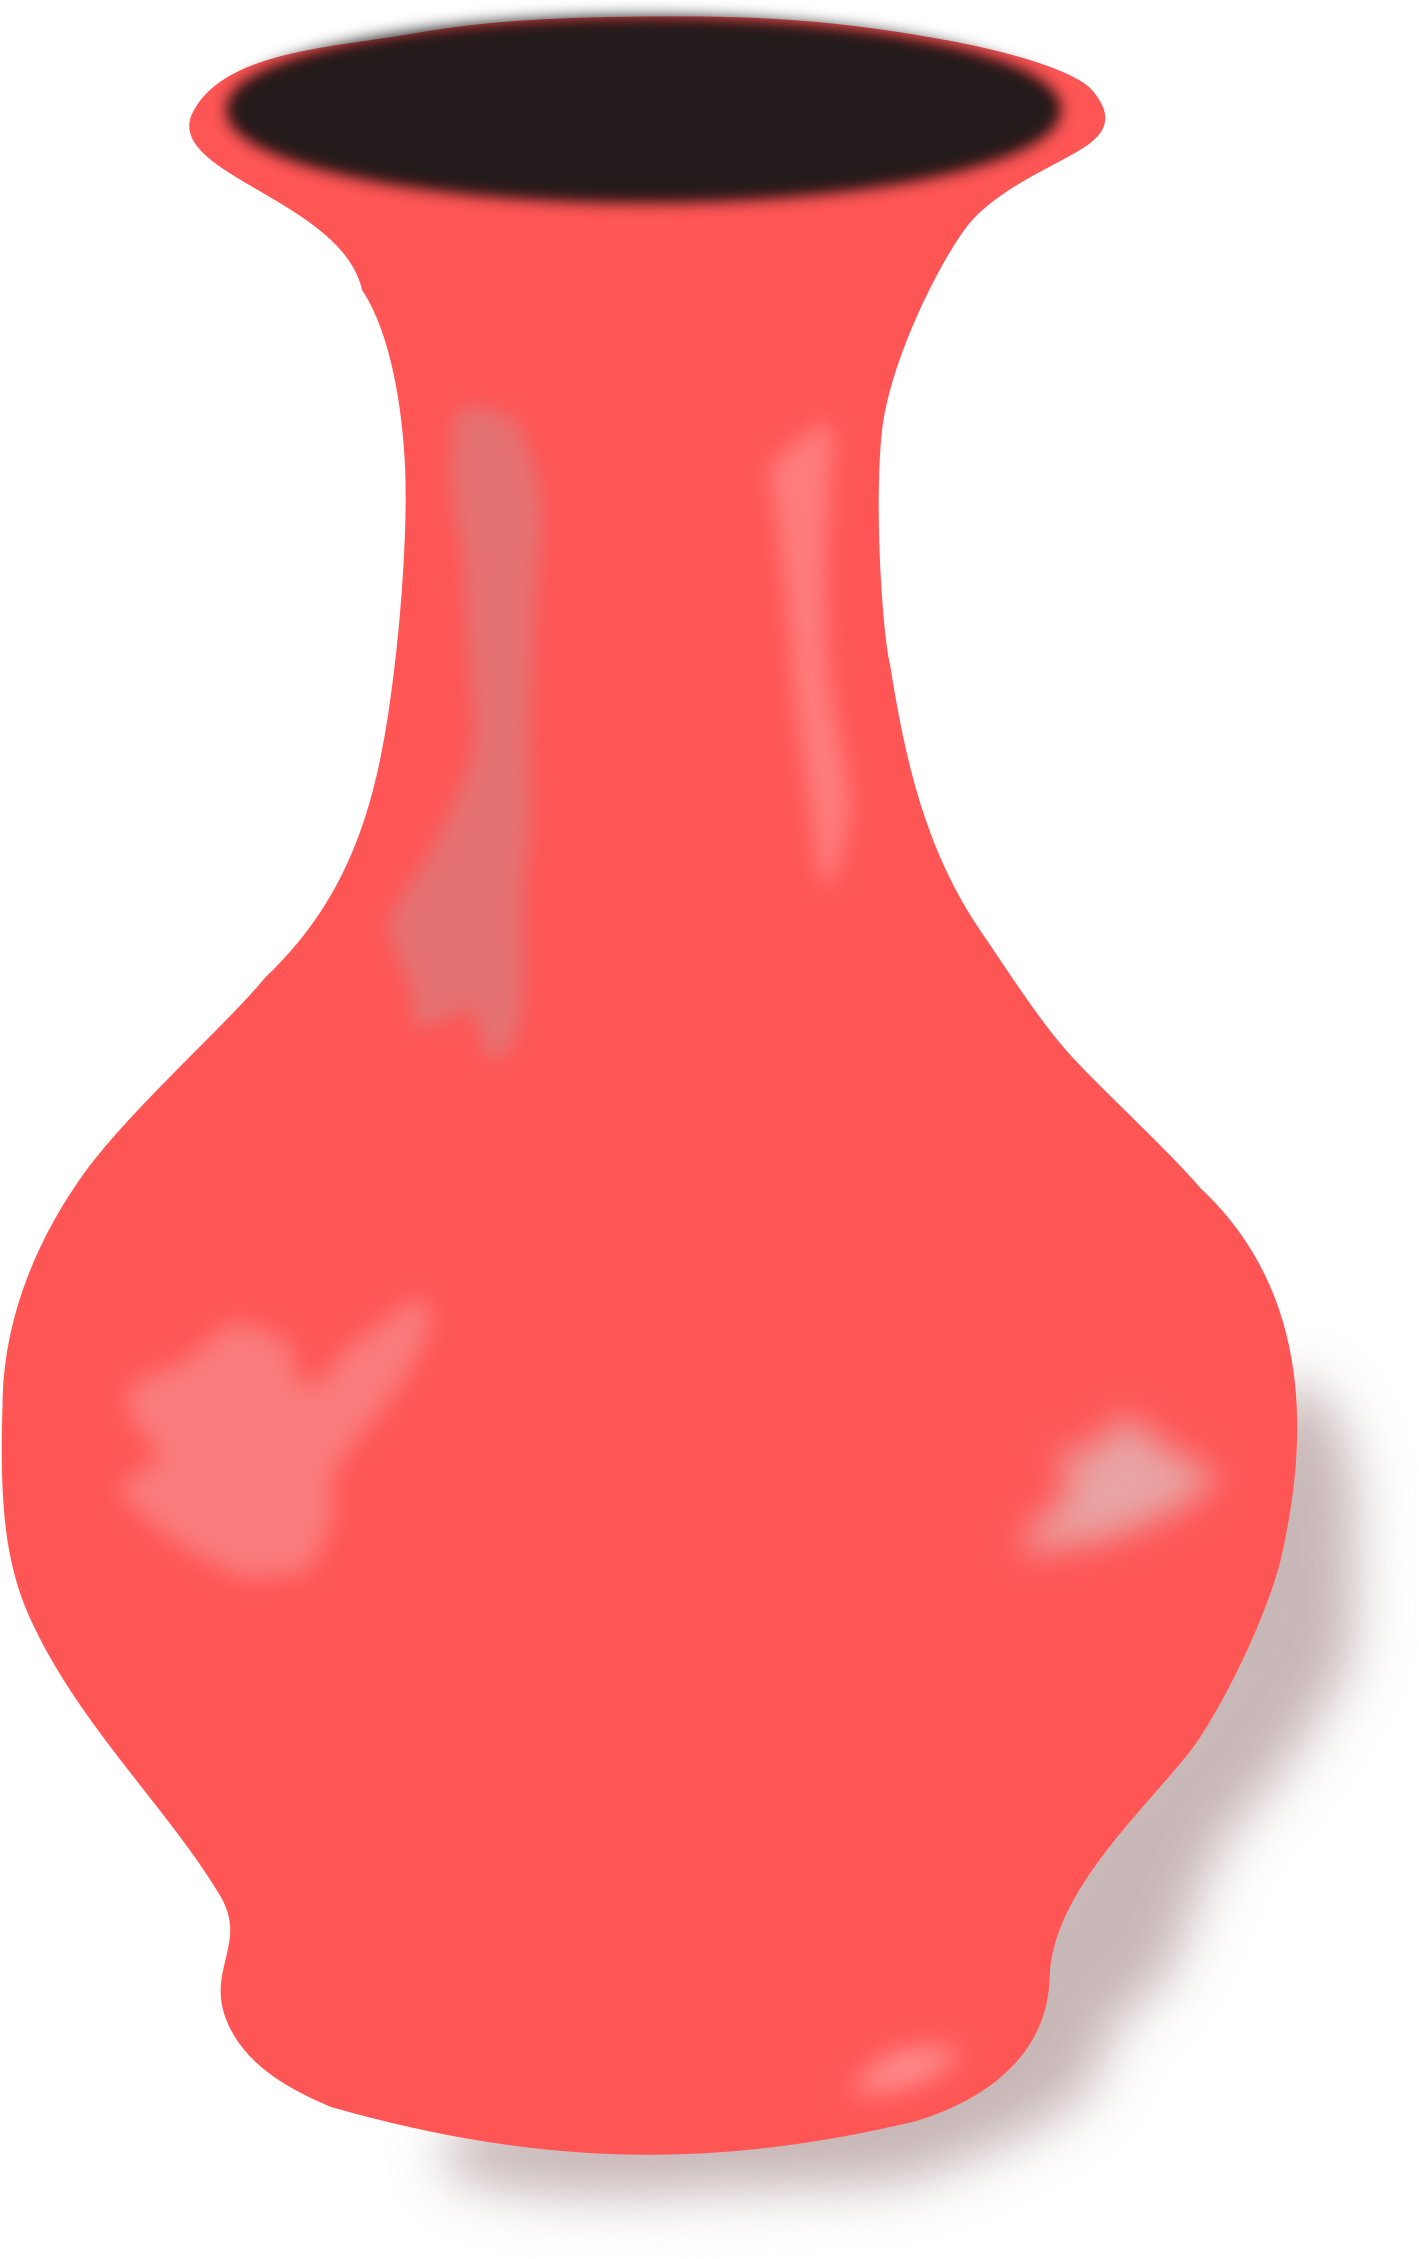 Vase Png - Vase Cartoon Png Clipart, free png download.